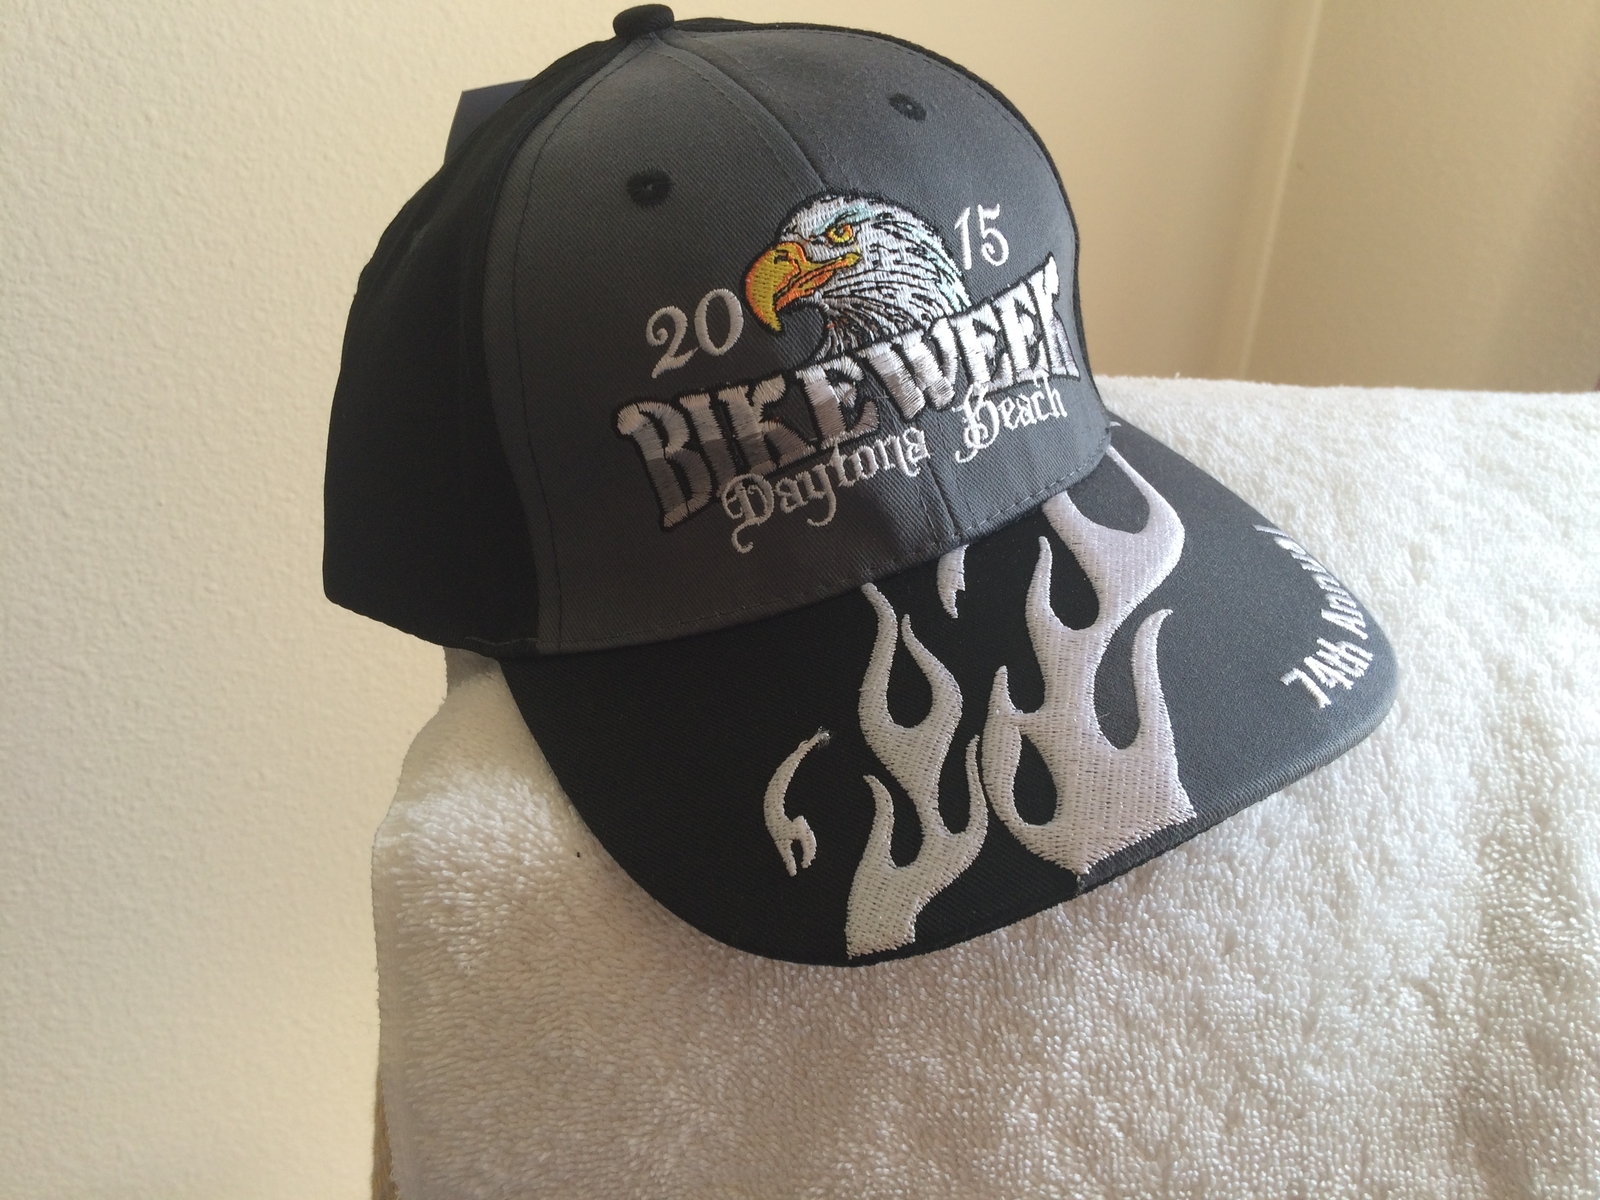 2015 Daytona Beach Bike Week Men's new black/grey ball cap w/tags - $18.00